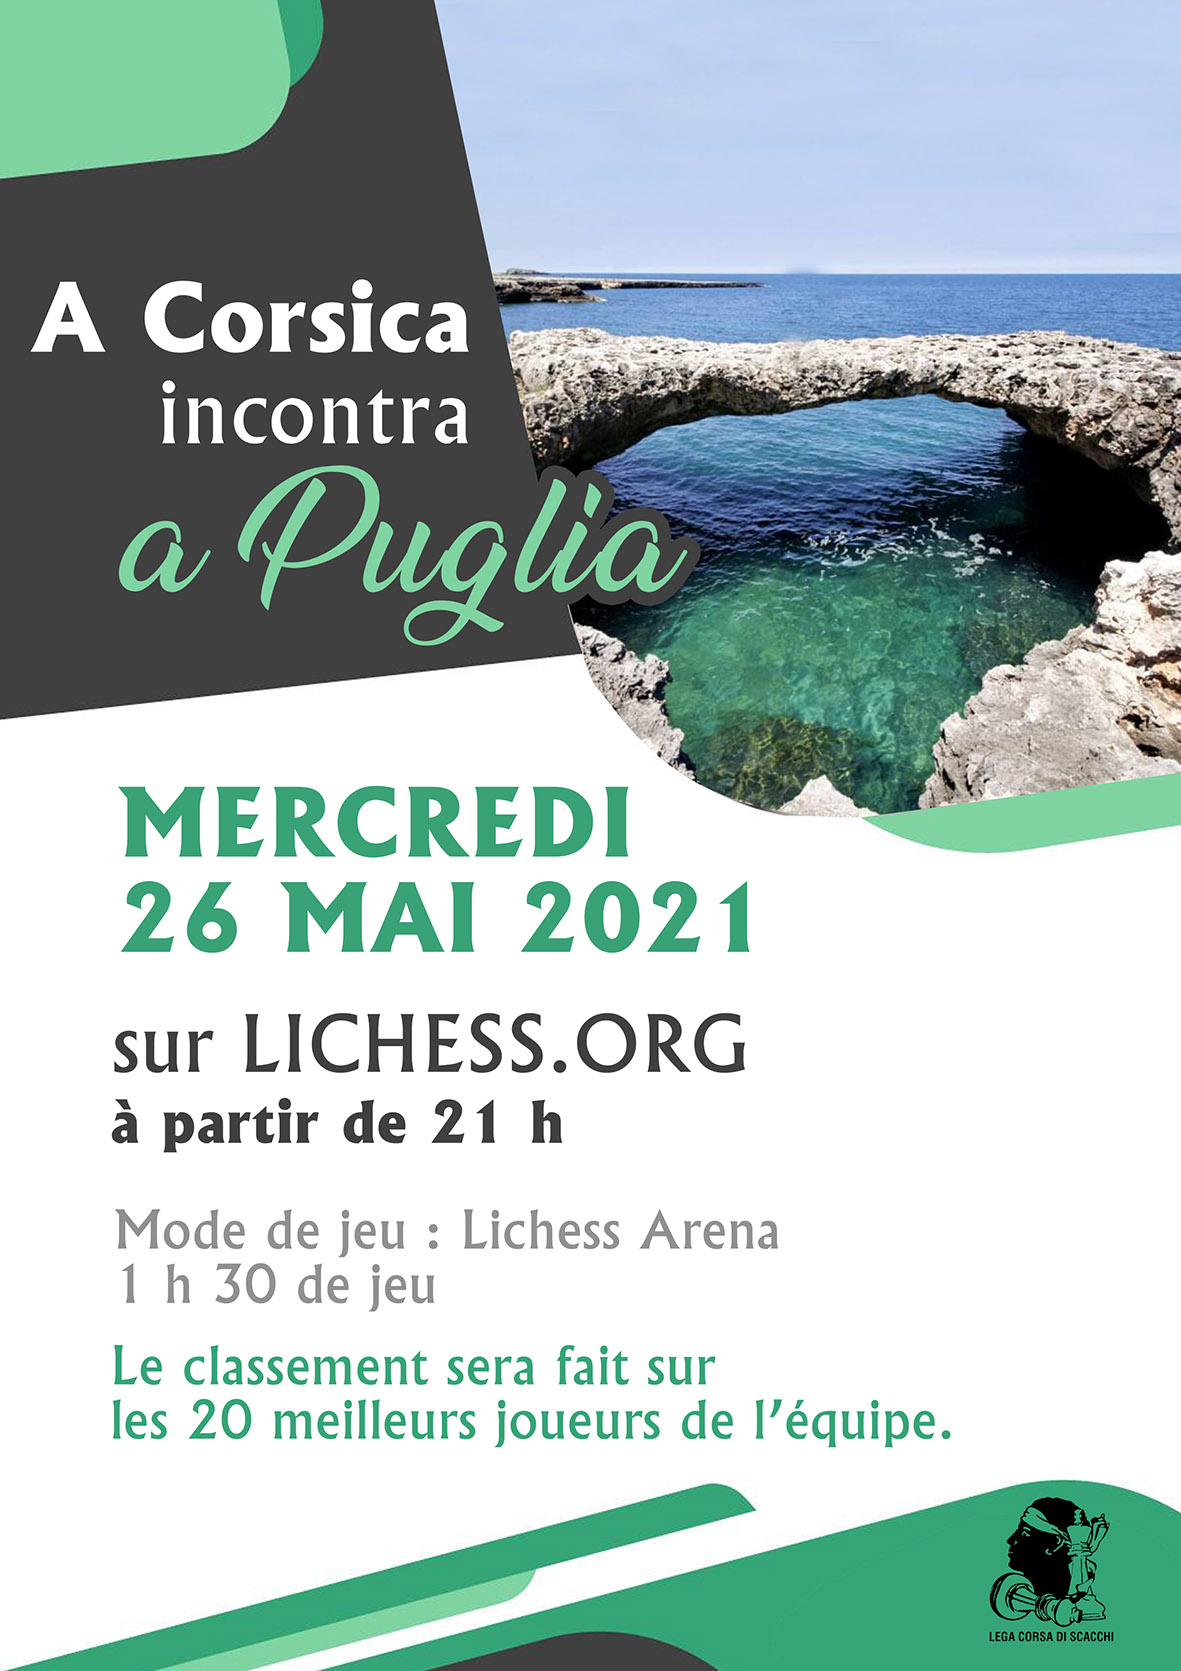 A Corsica sfida a Puglia